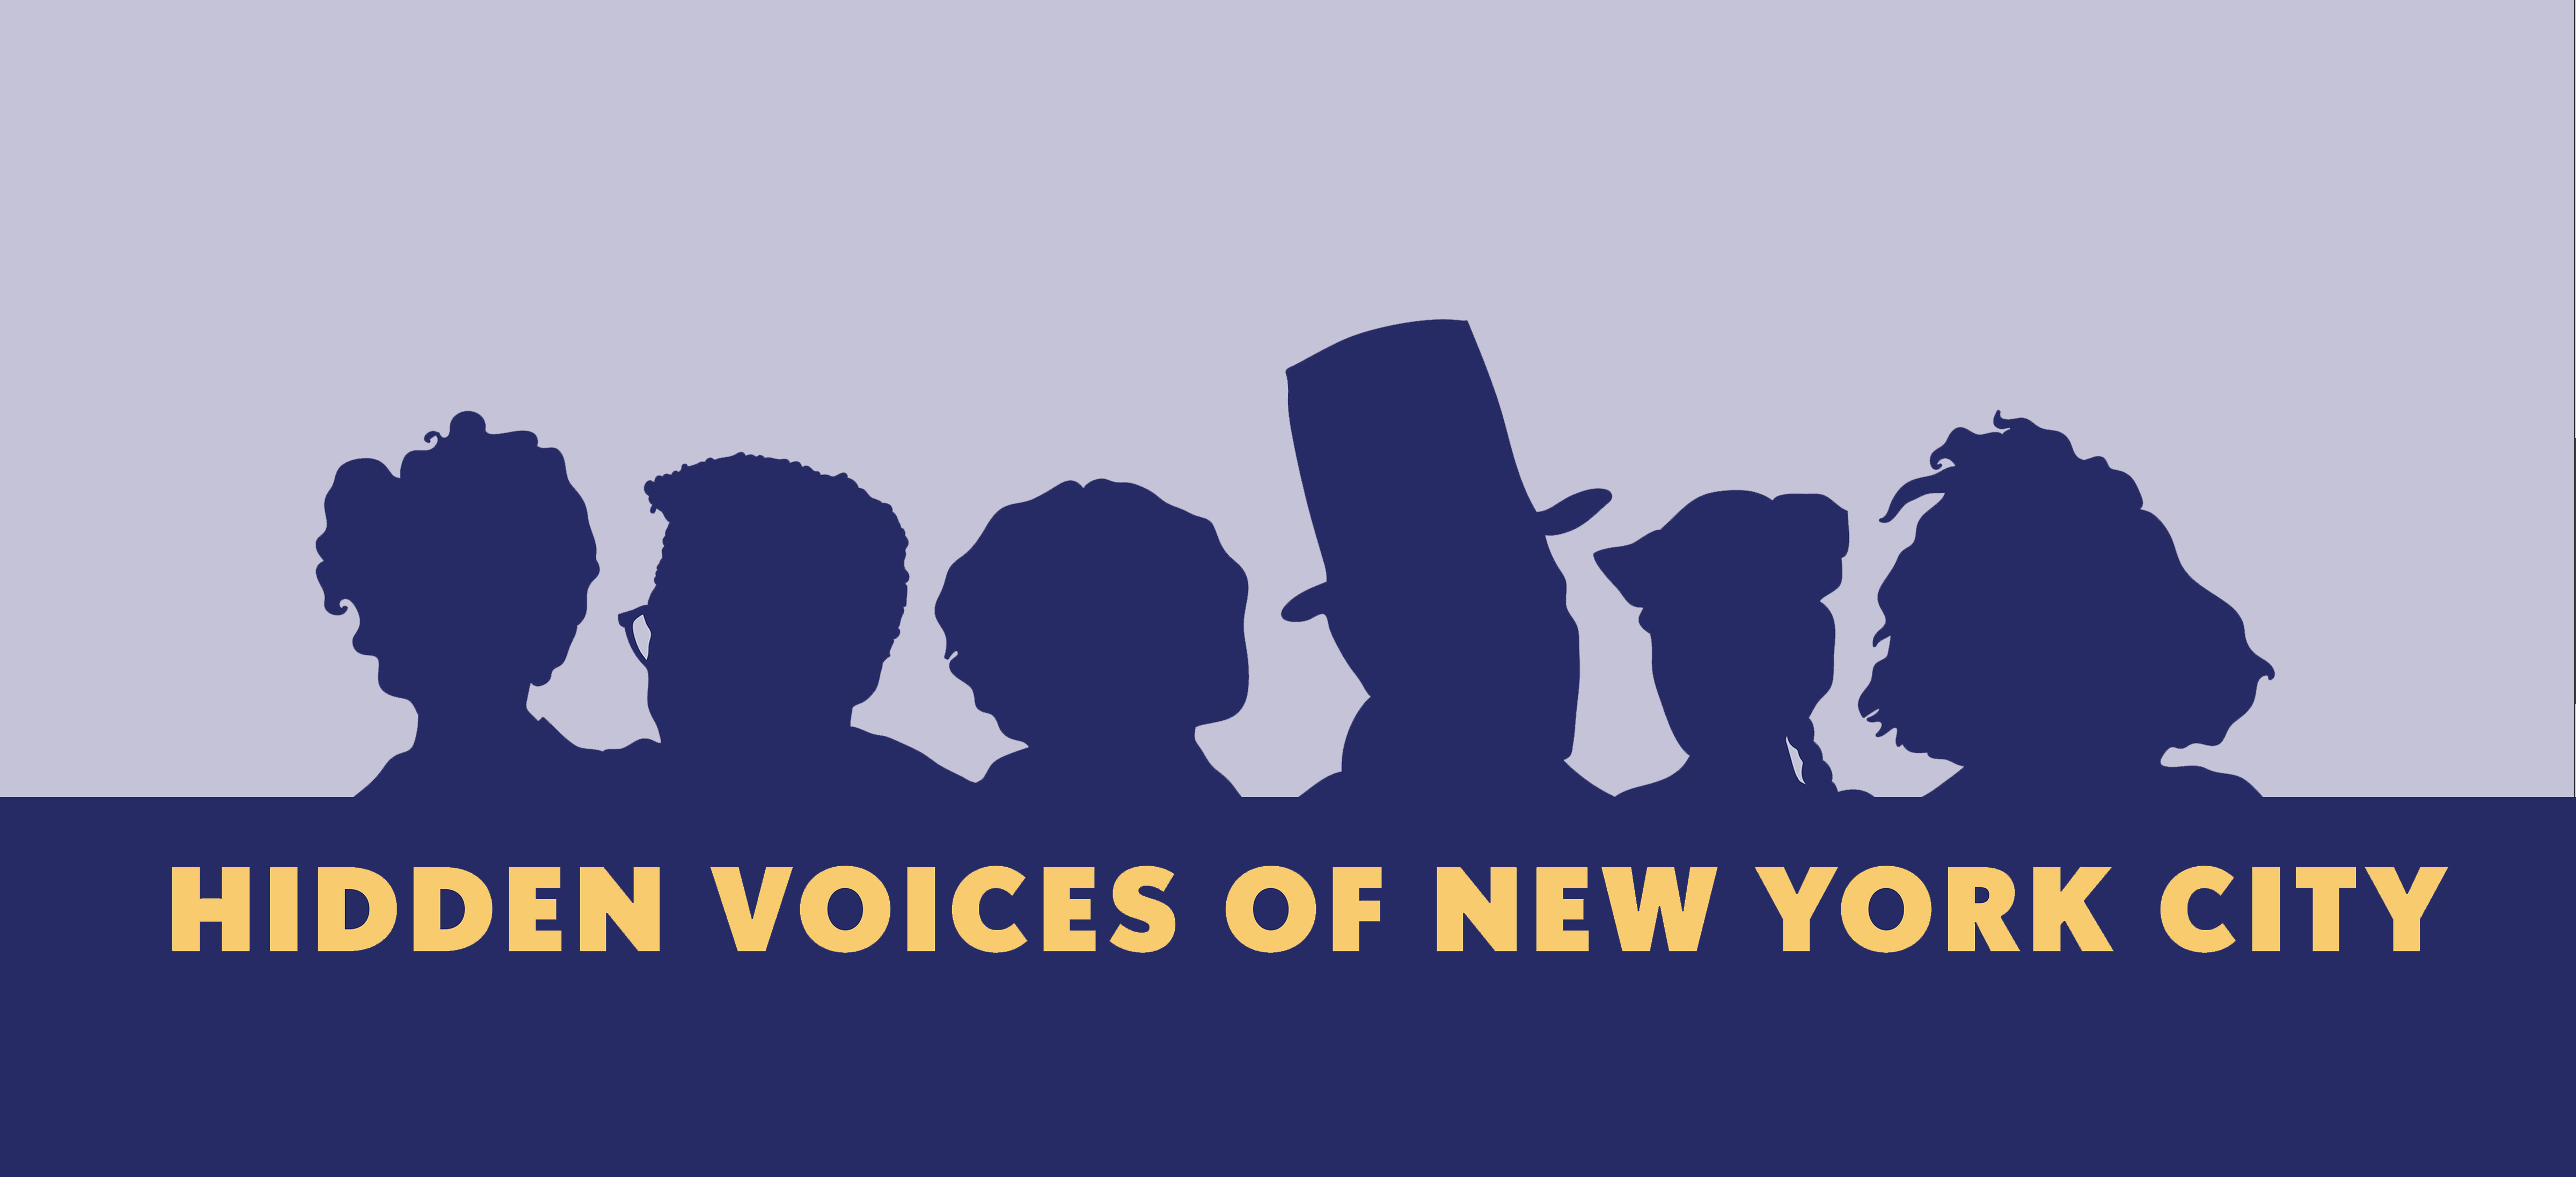 バナーには、バーチャル ワークショップ シリーズ「Hidden Voices of New York City」で取り上げられたフィギュアの XNUMX つのシルエット画像が含まれています。左から右に、アントニア パントージャ、ベイヤード ラスティン、エルシー リチャードソン、デビッド ラグルズ、ウォン チン フー、シルビア リベラです。